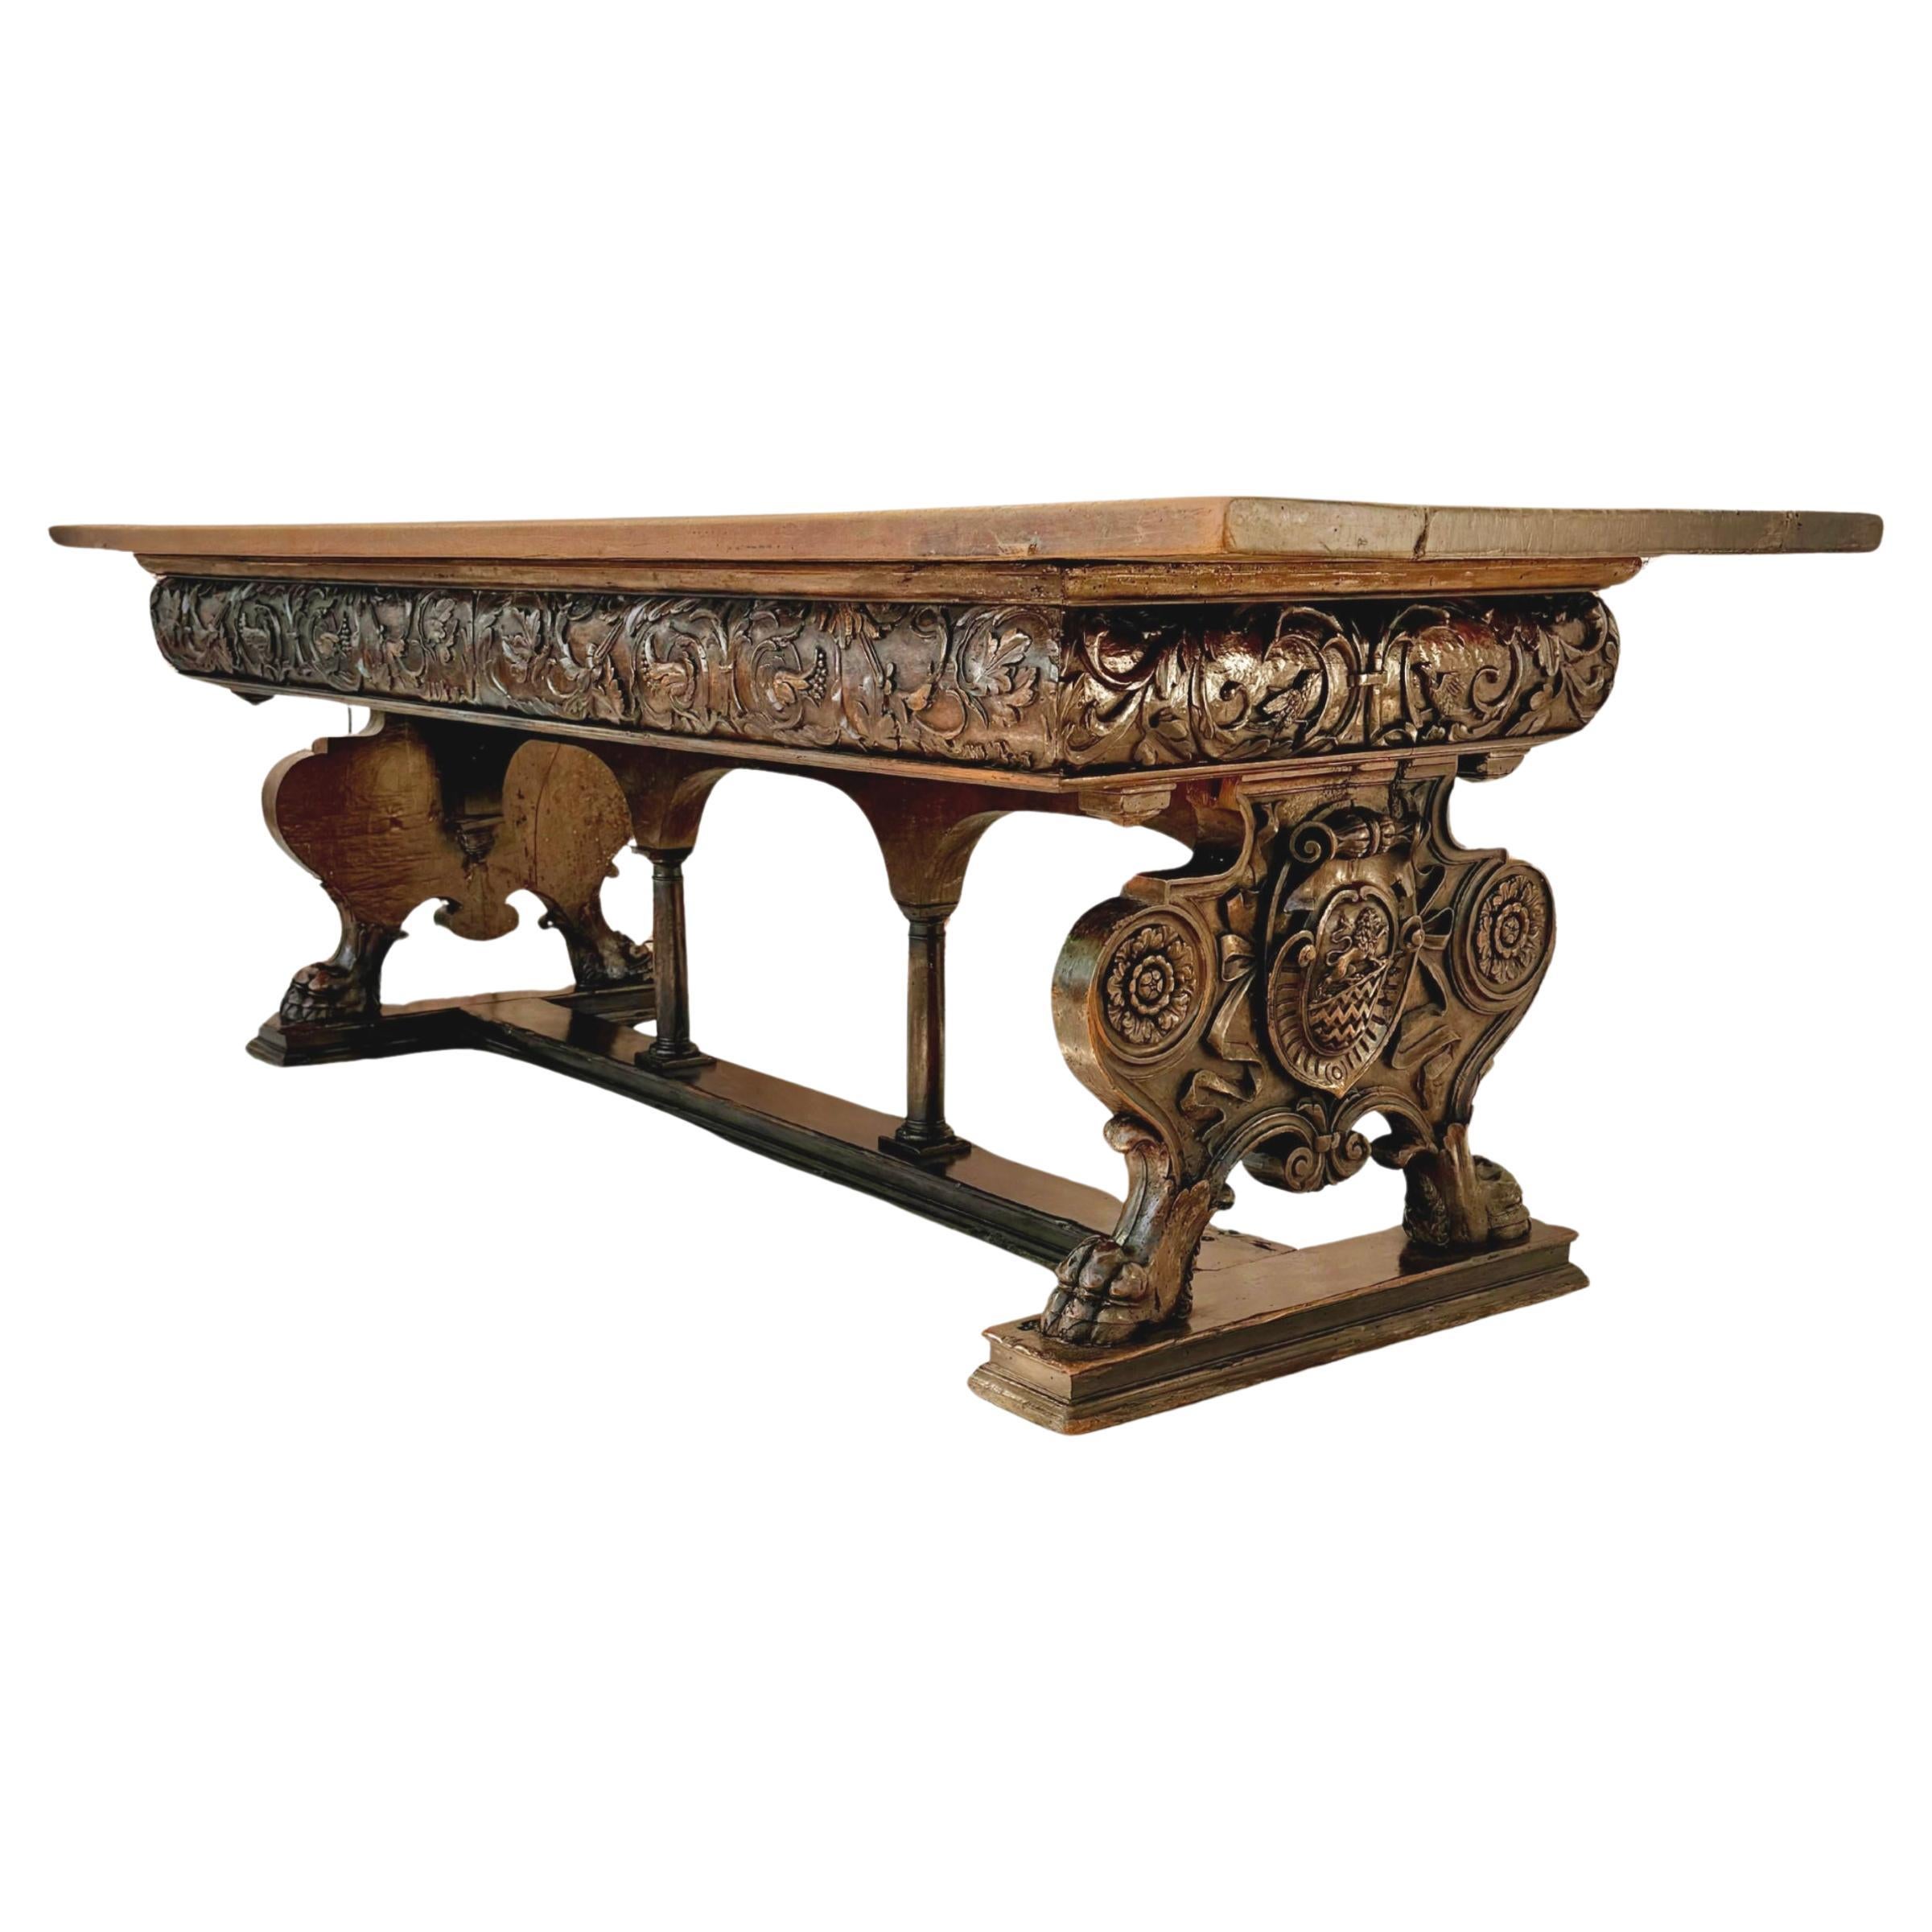 Rare et superbe centre en noyer de la Renaissance italienne du XVIIe siècle 
table. Cette majestueuse table de bibliothèque a été sculptée à la main en Italie au début des années 1600. Le plateau est constitué de deux épaisses planches de bois de